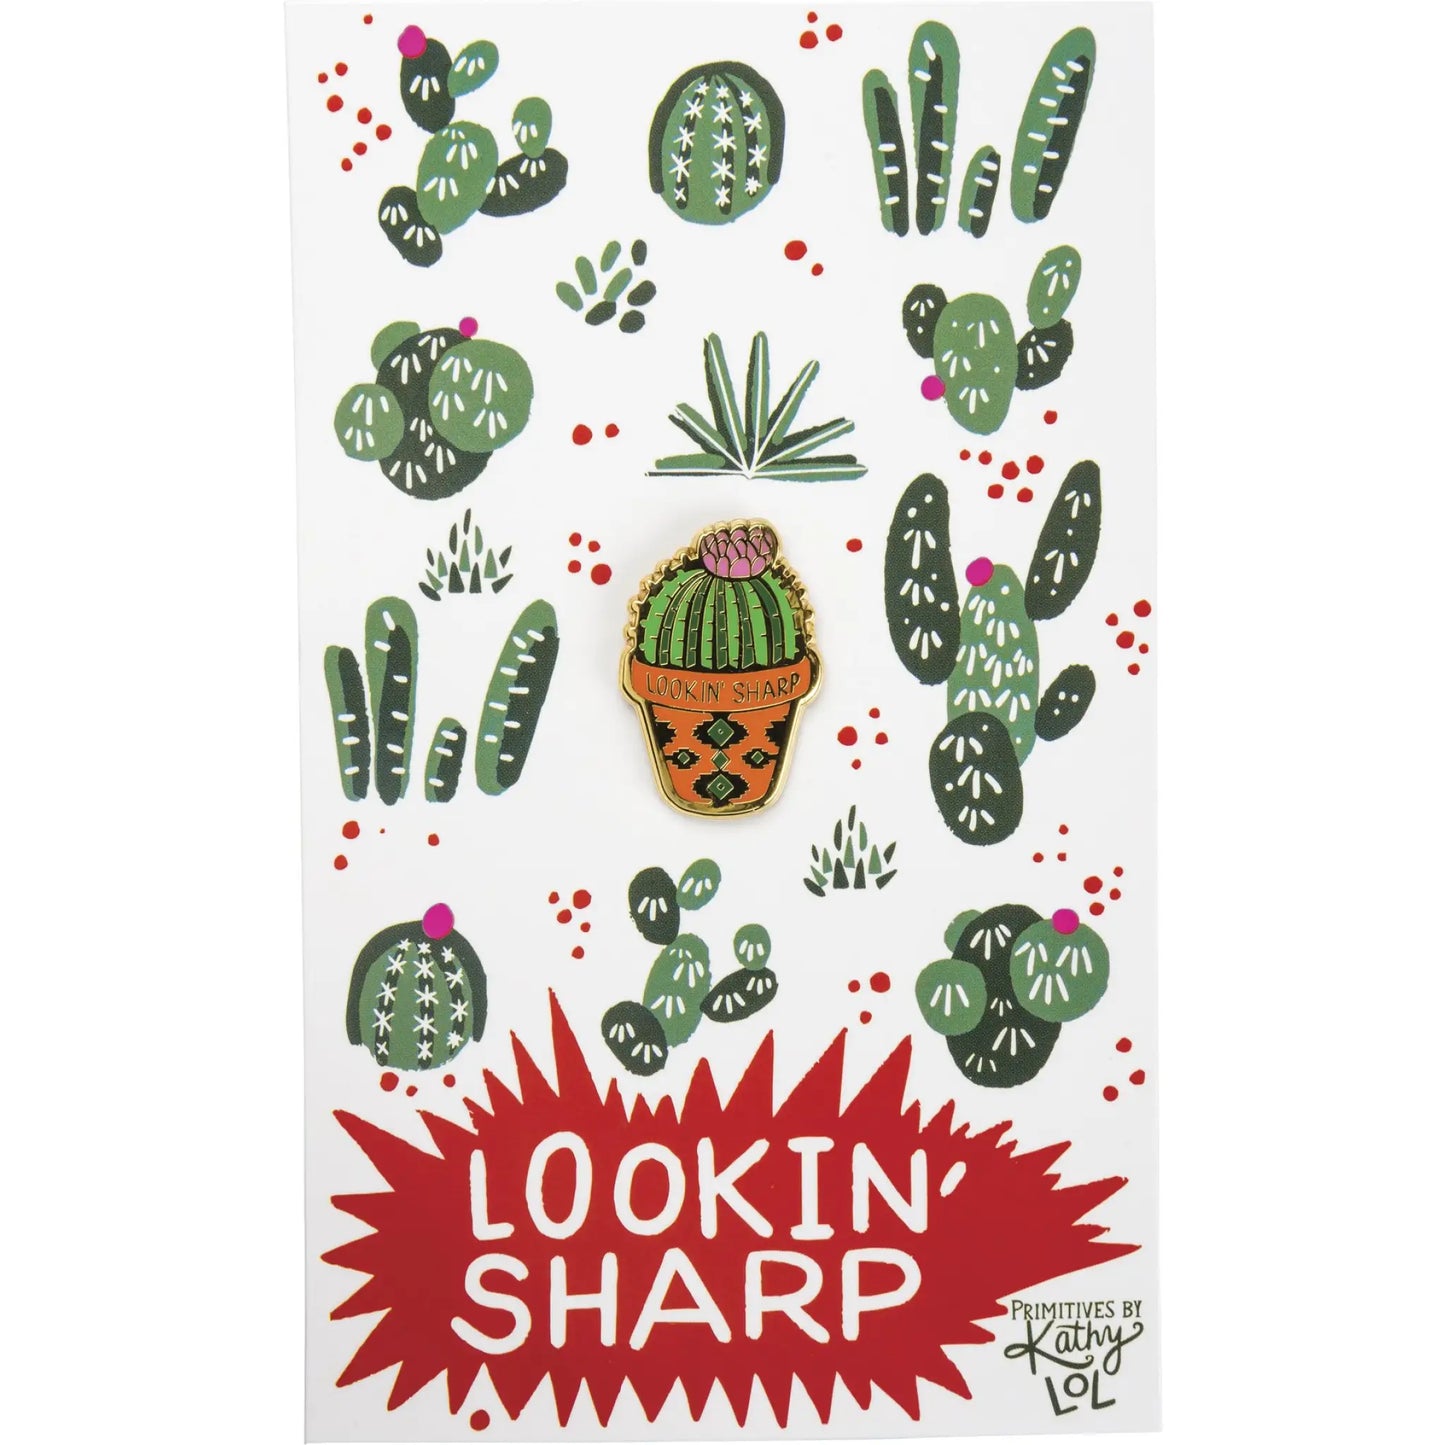 Lookin’ Sharp Pin - Pins